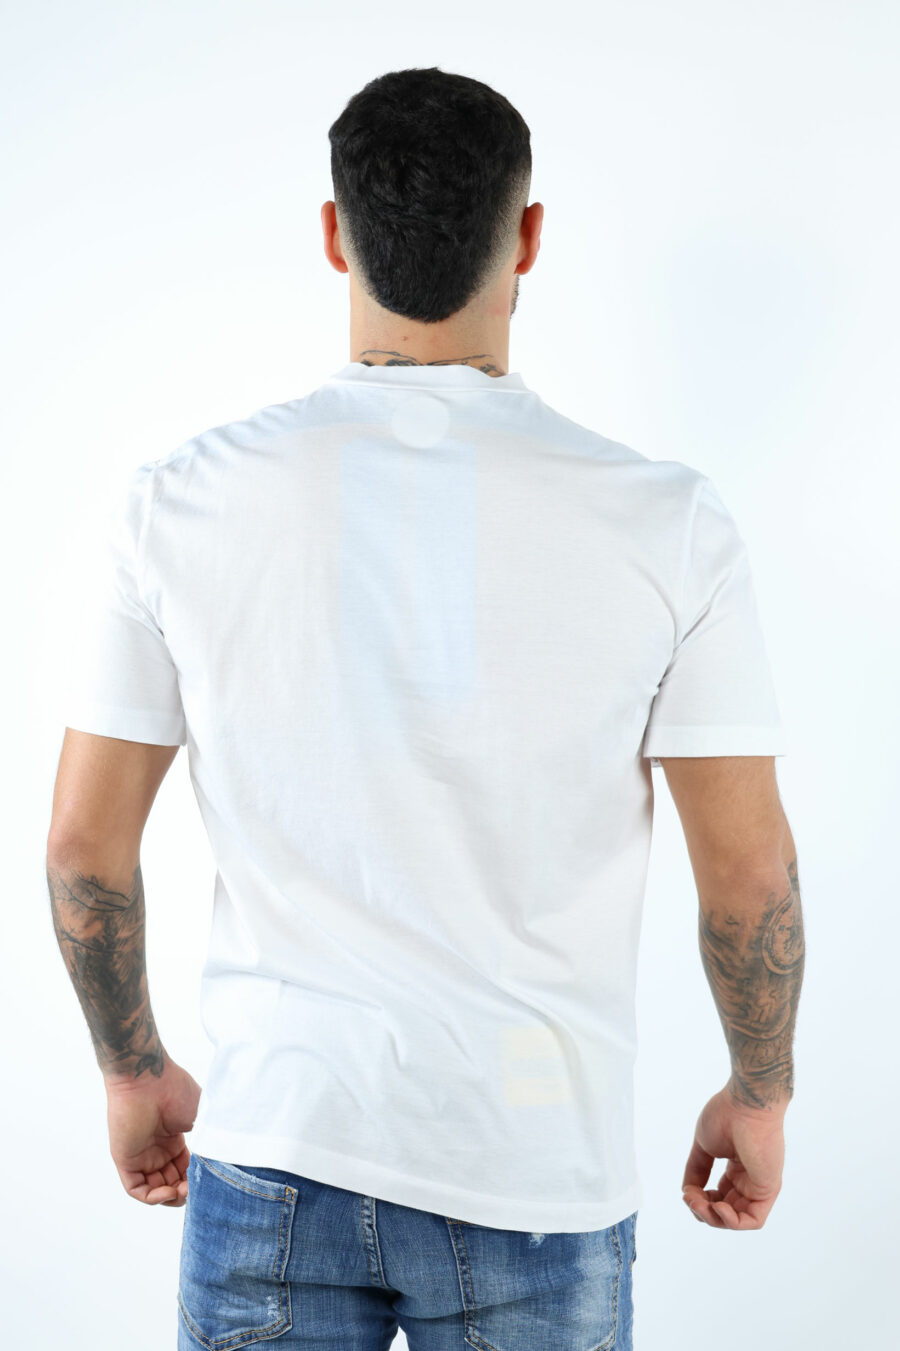 Camiseta blanca con maxilogo hoja monocromático en relieve - 106621